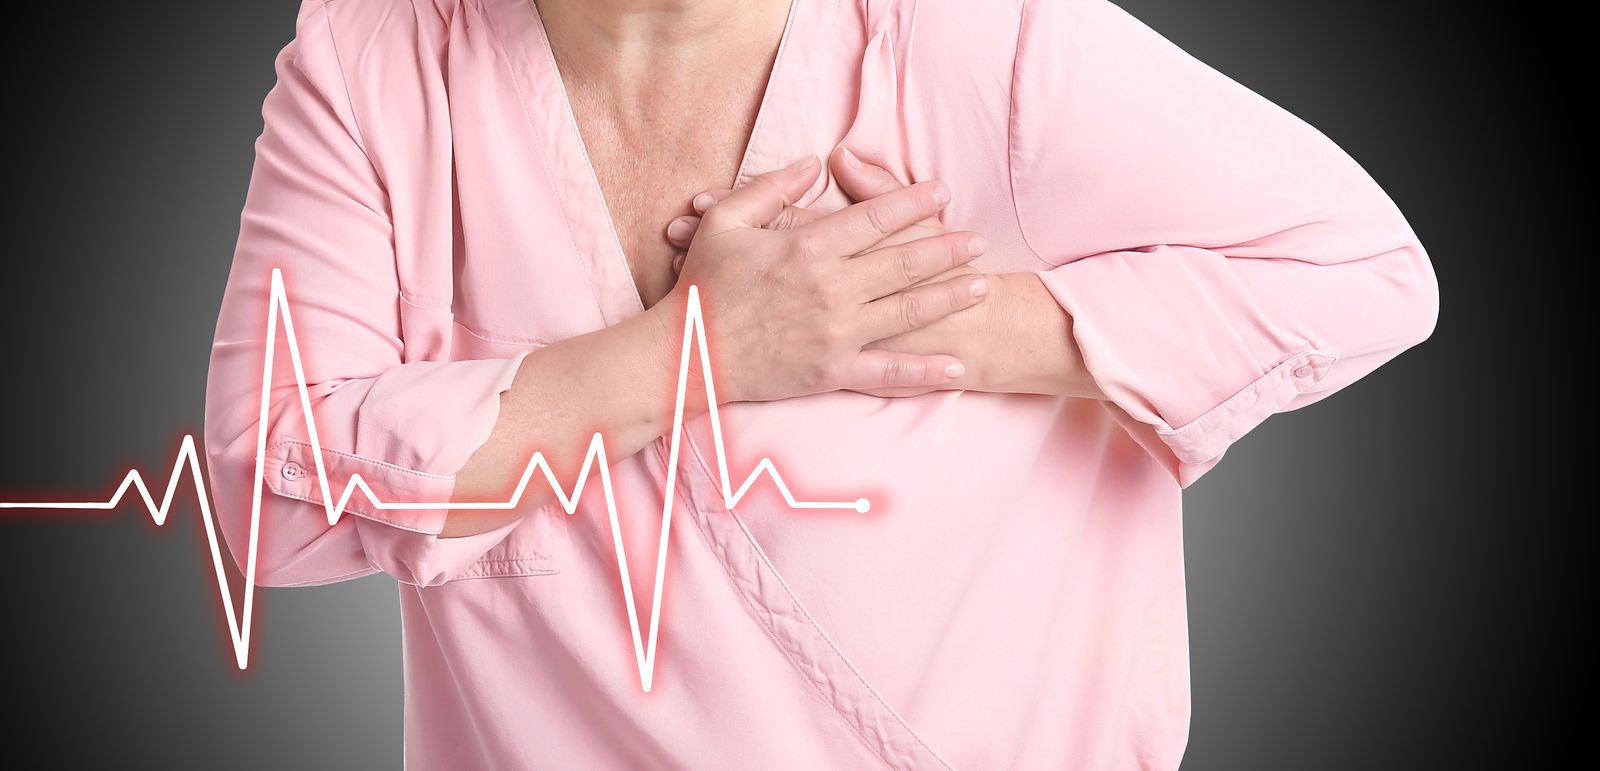 La amiloidosis puede provocar insuficiencia cardiaca